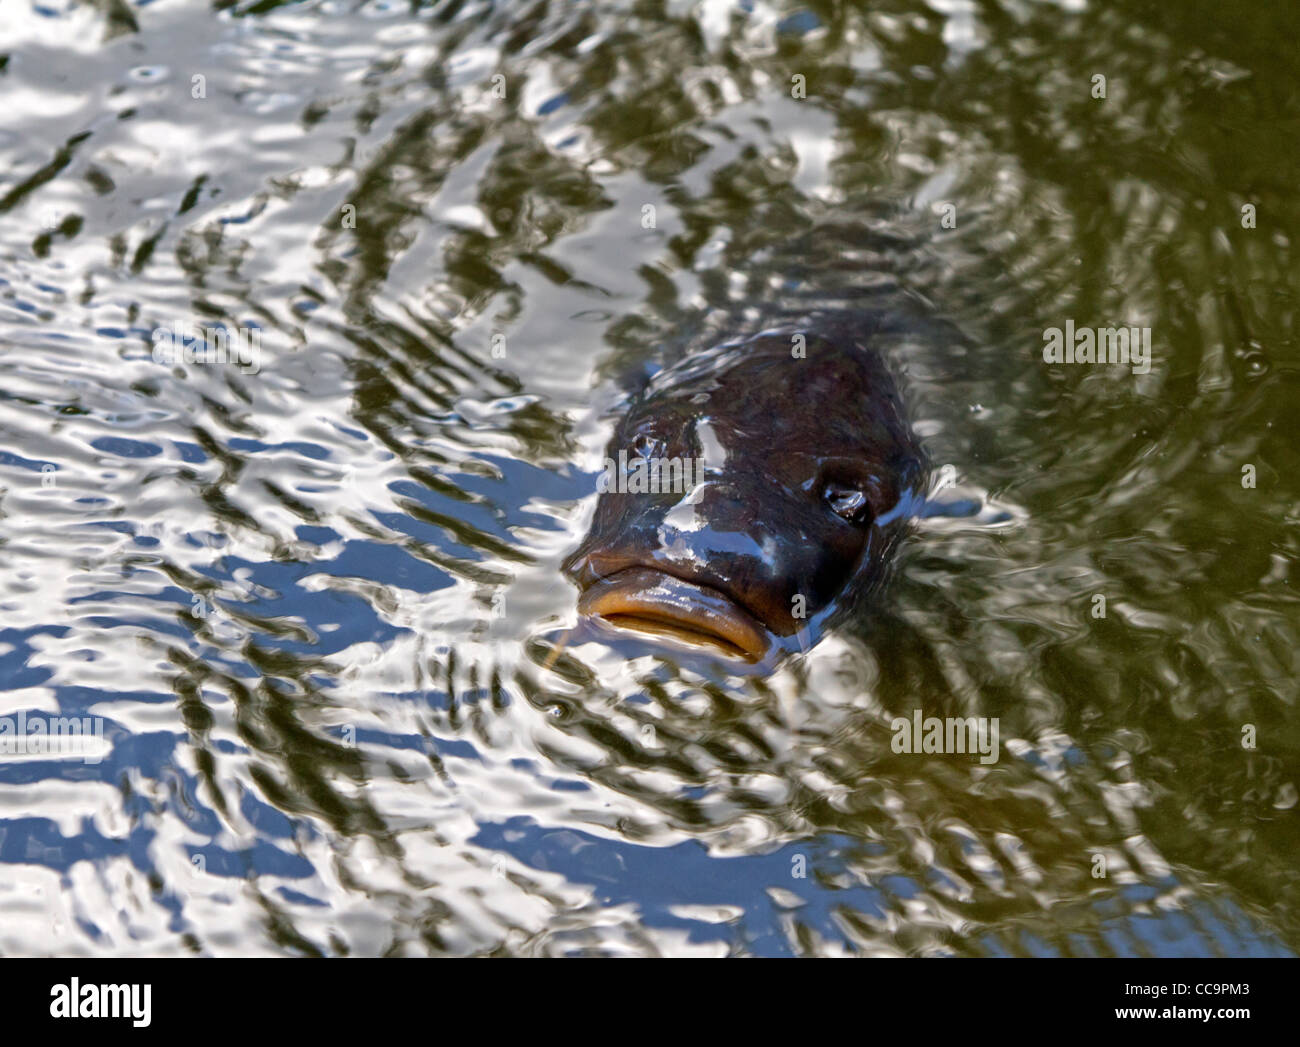 Common carp (Cyprinus carpio) Stock Photo